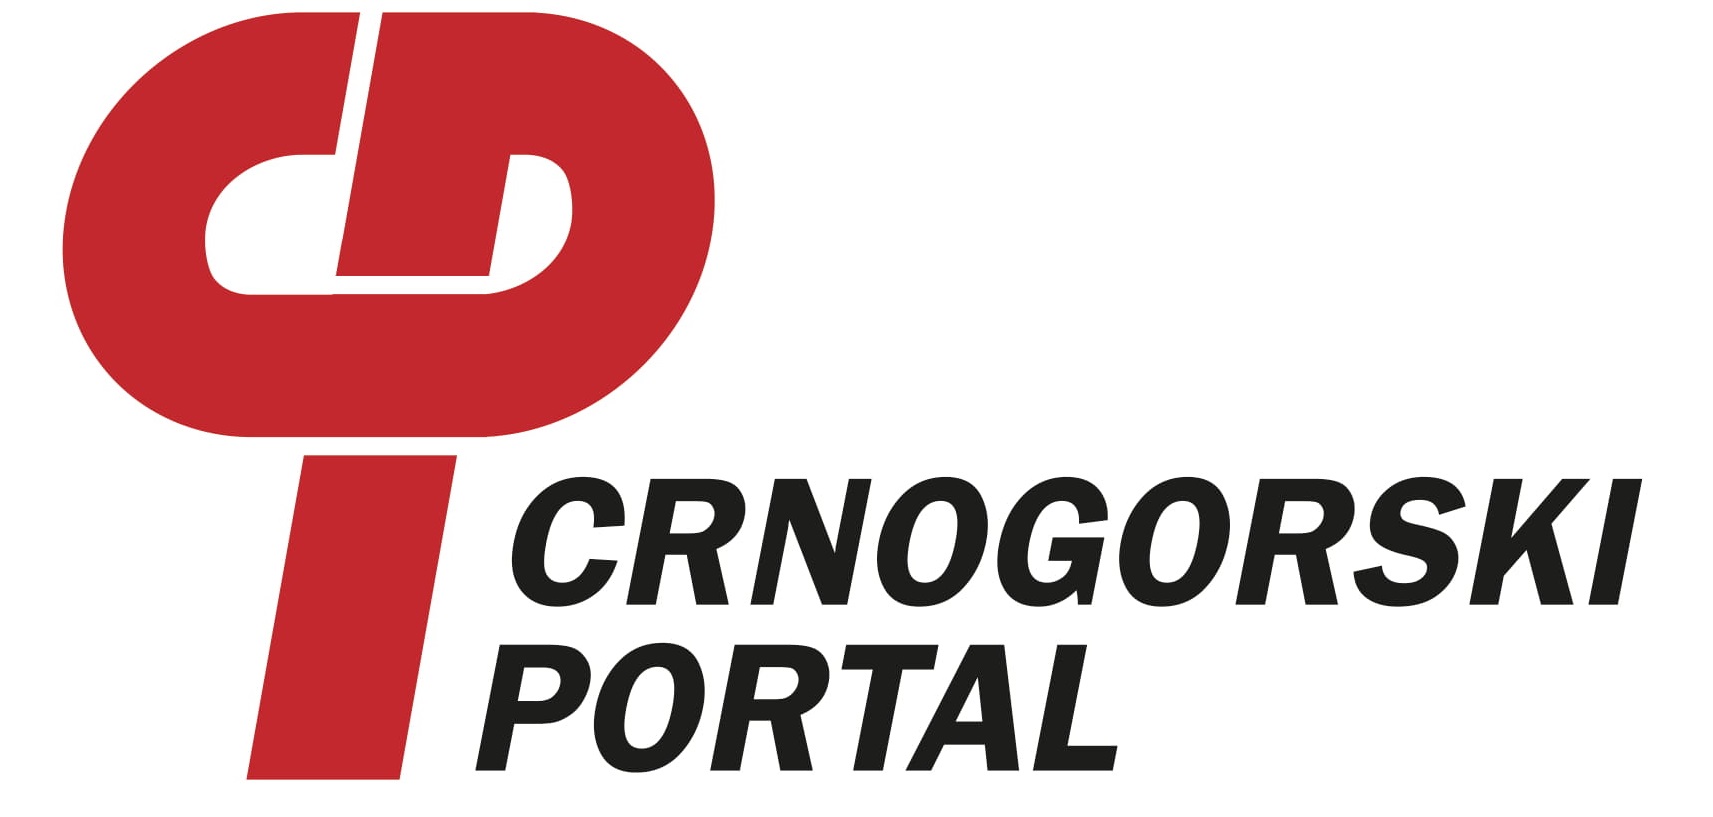 Crnogorski portal